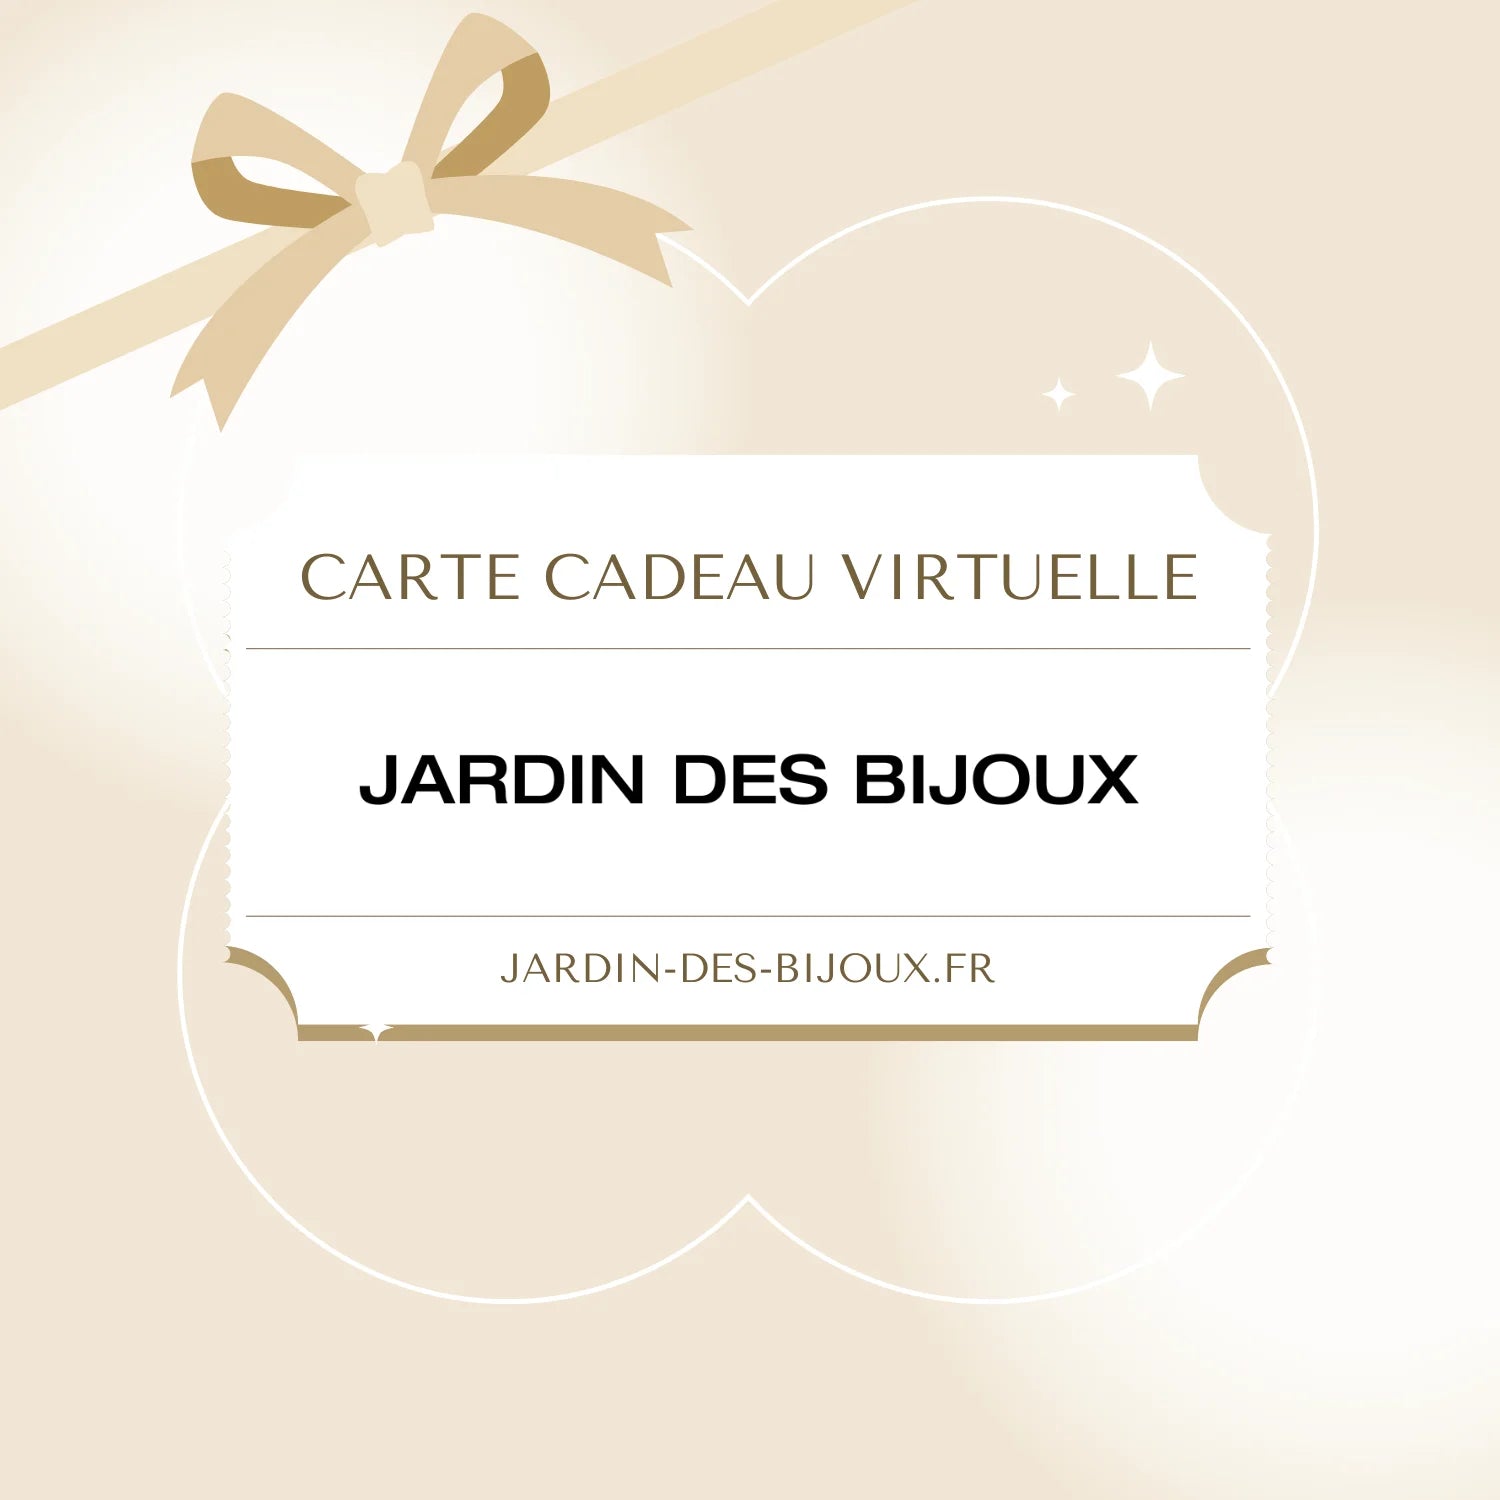 http://www.jardin-des-bijoux.fr/cdn/shop/files/carte-cadeau-e-jardin-des-bijoux-290.webp?v=1694376134